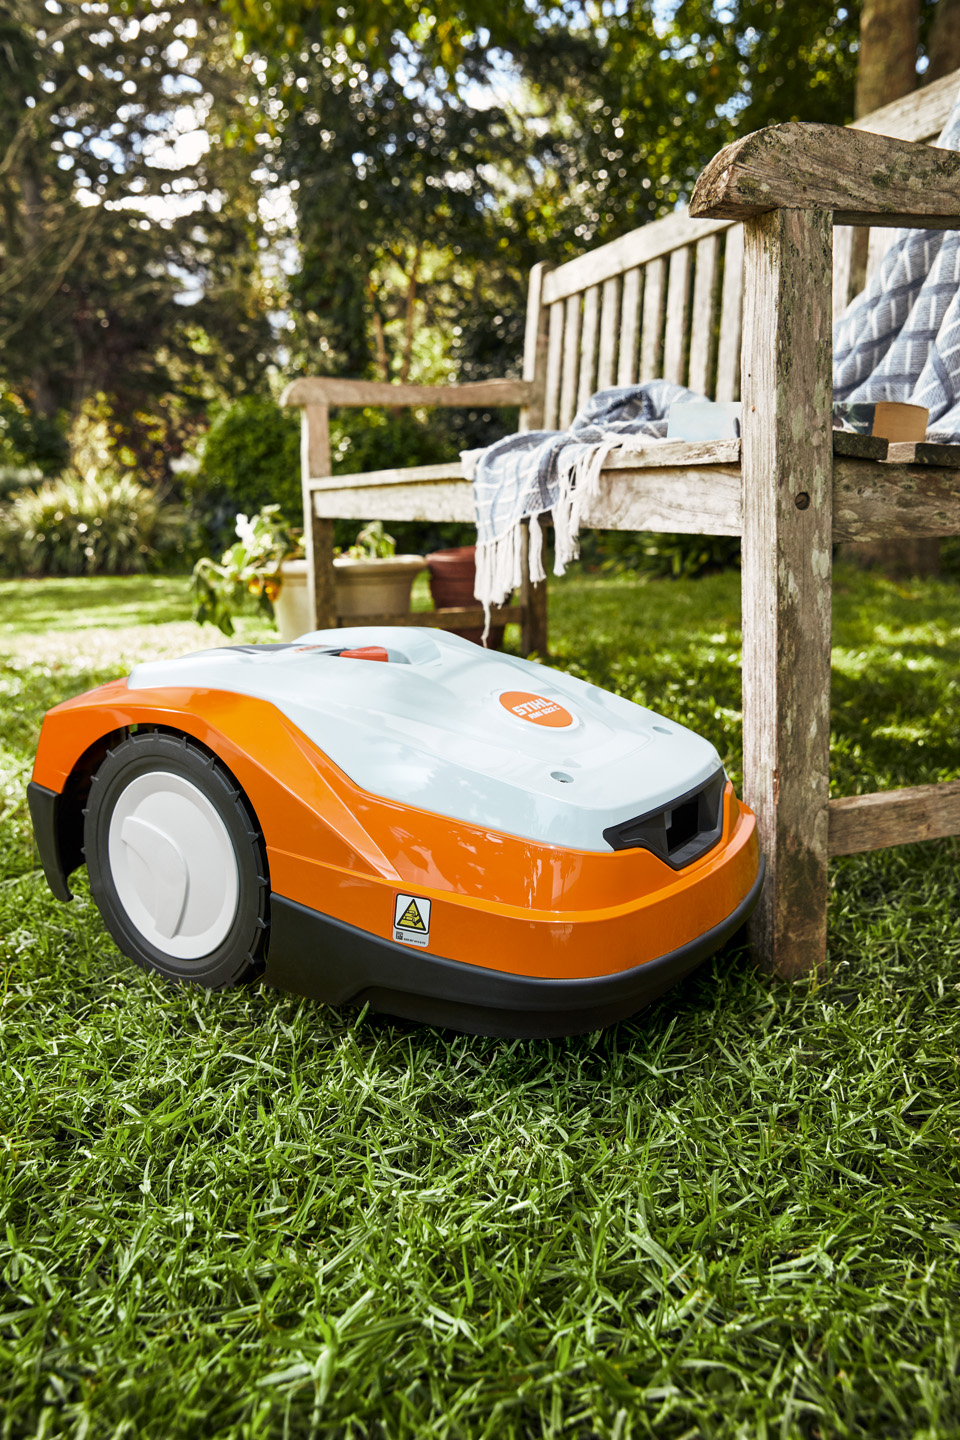 Robotgräsklippare STIHL iMOW® RM 522 på en grön gräsmatta intill en bänk